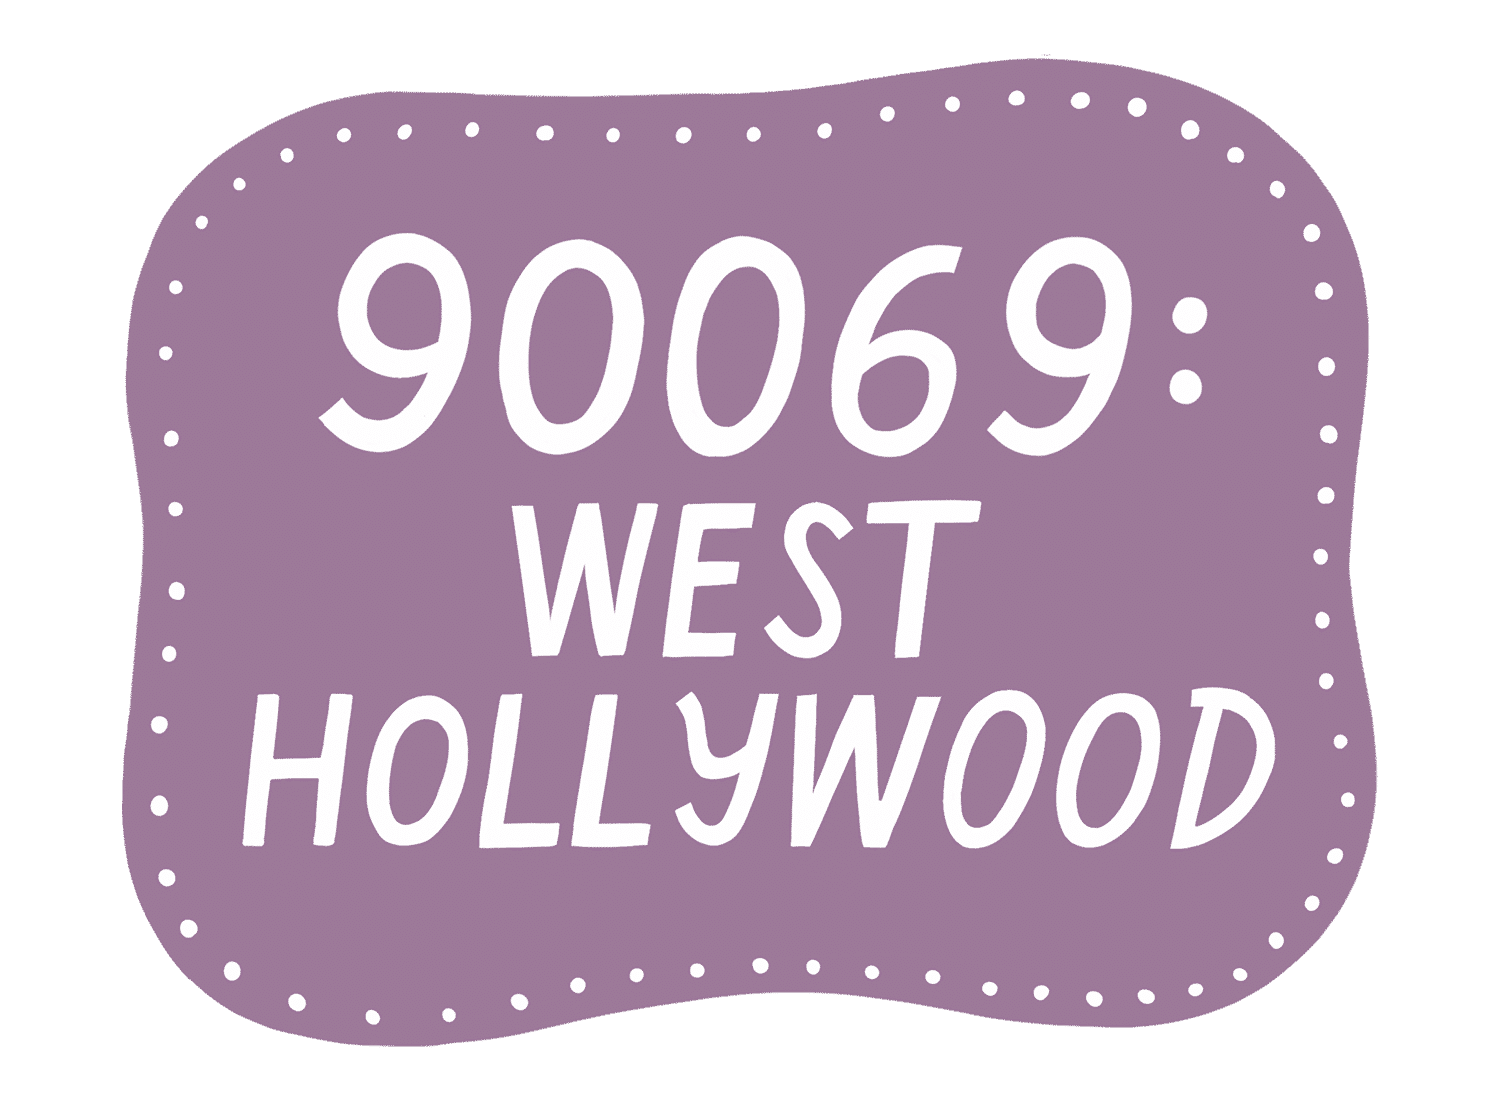 Community Salon - 90069: West Hollywood